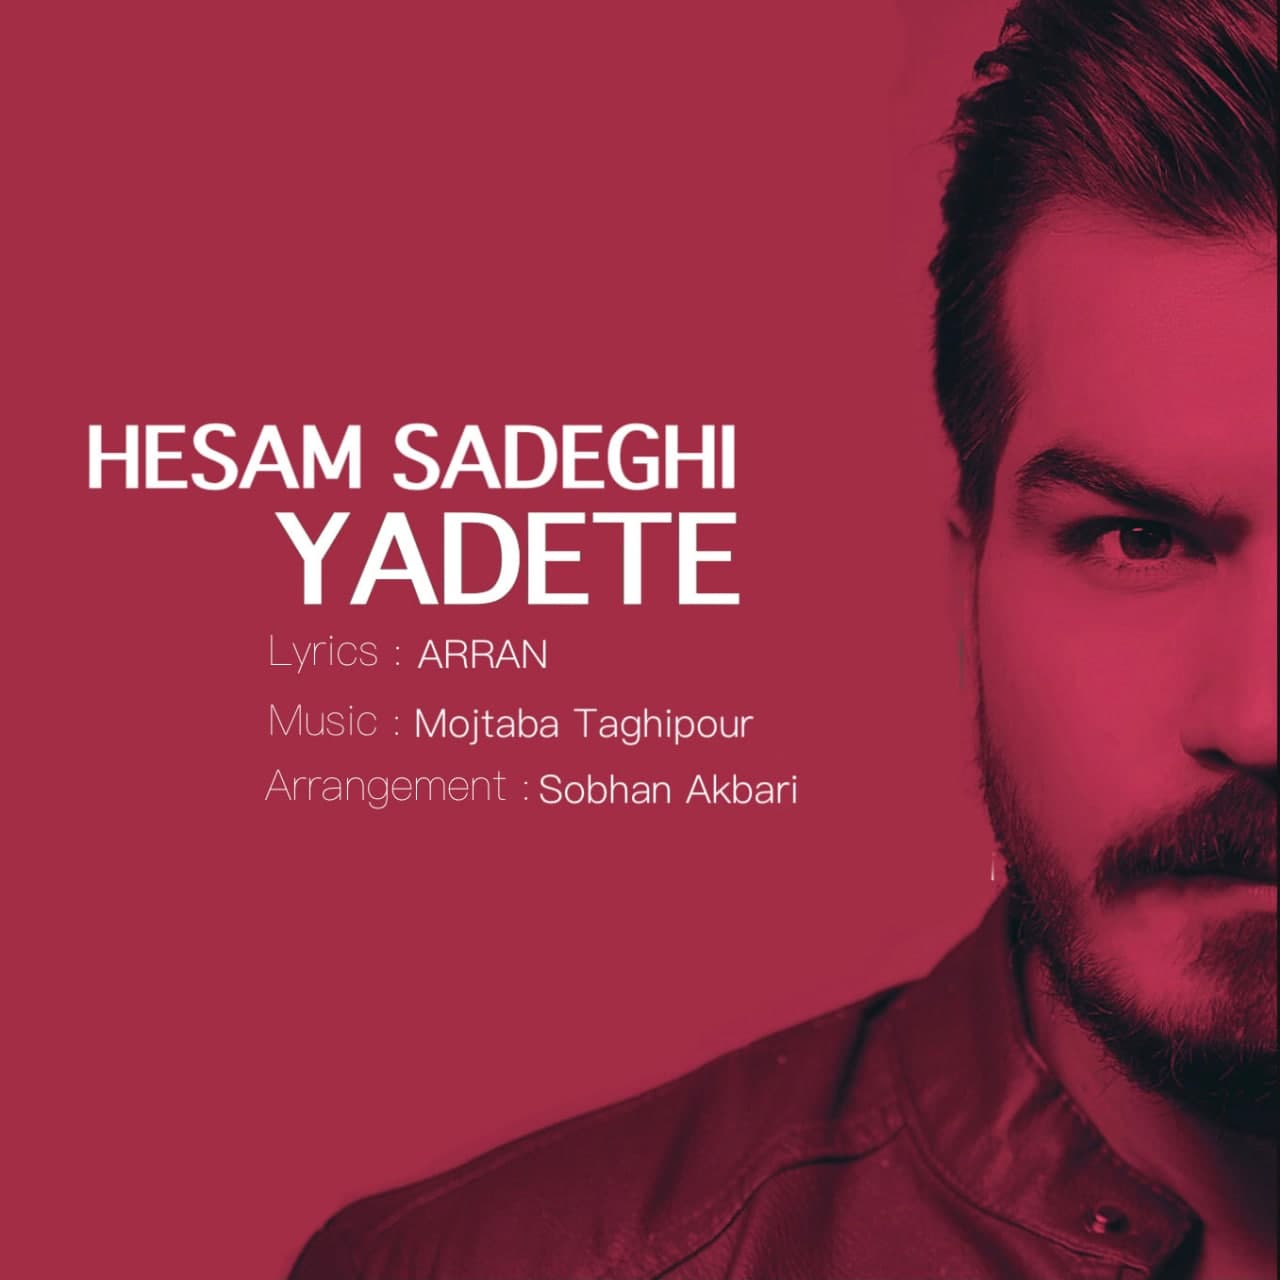 دانلود آهنگ جدید یادته از حسام صادقی همراه متن آهنگ